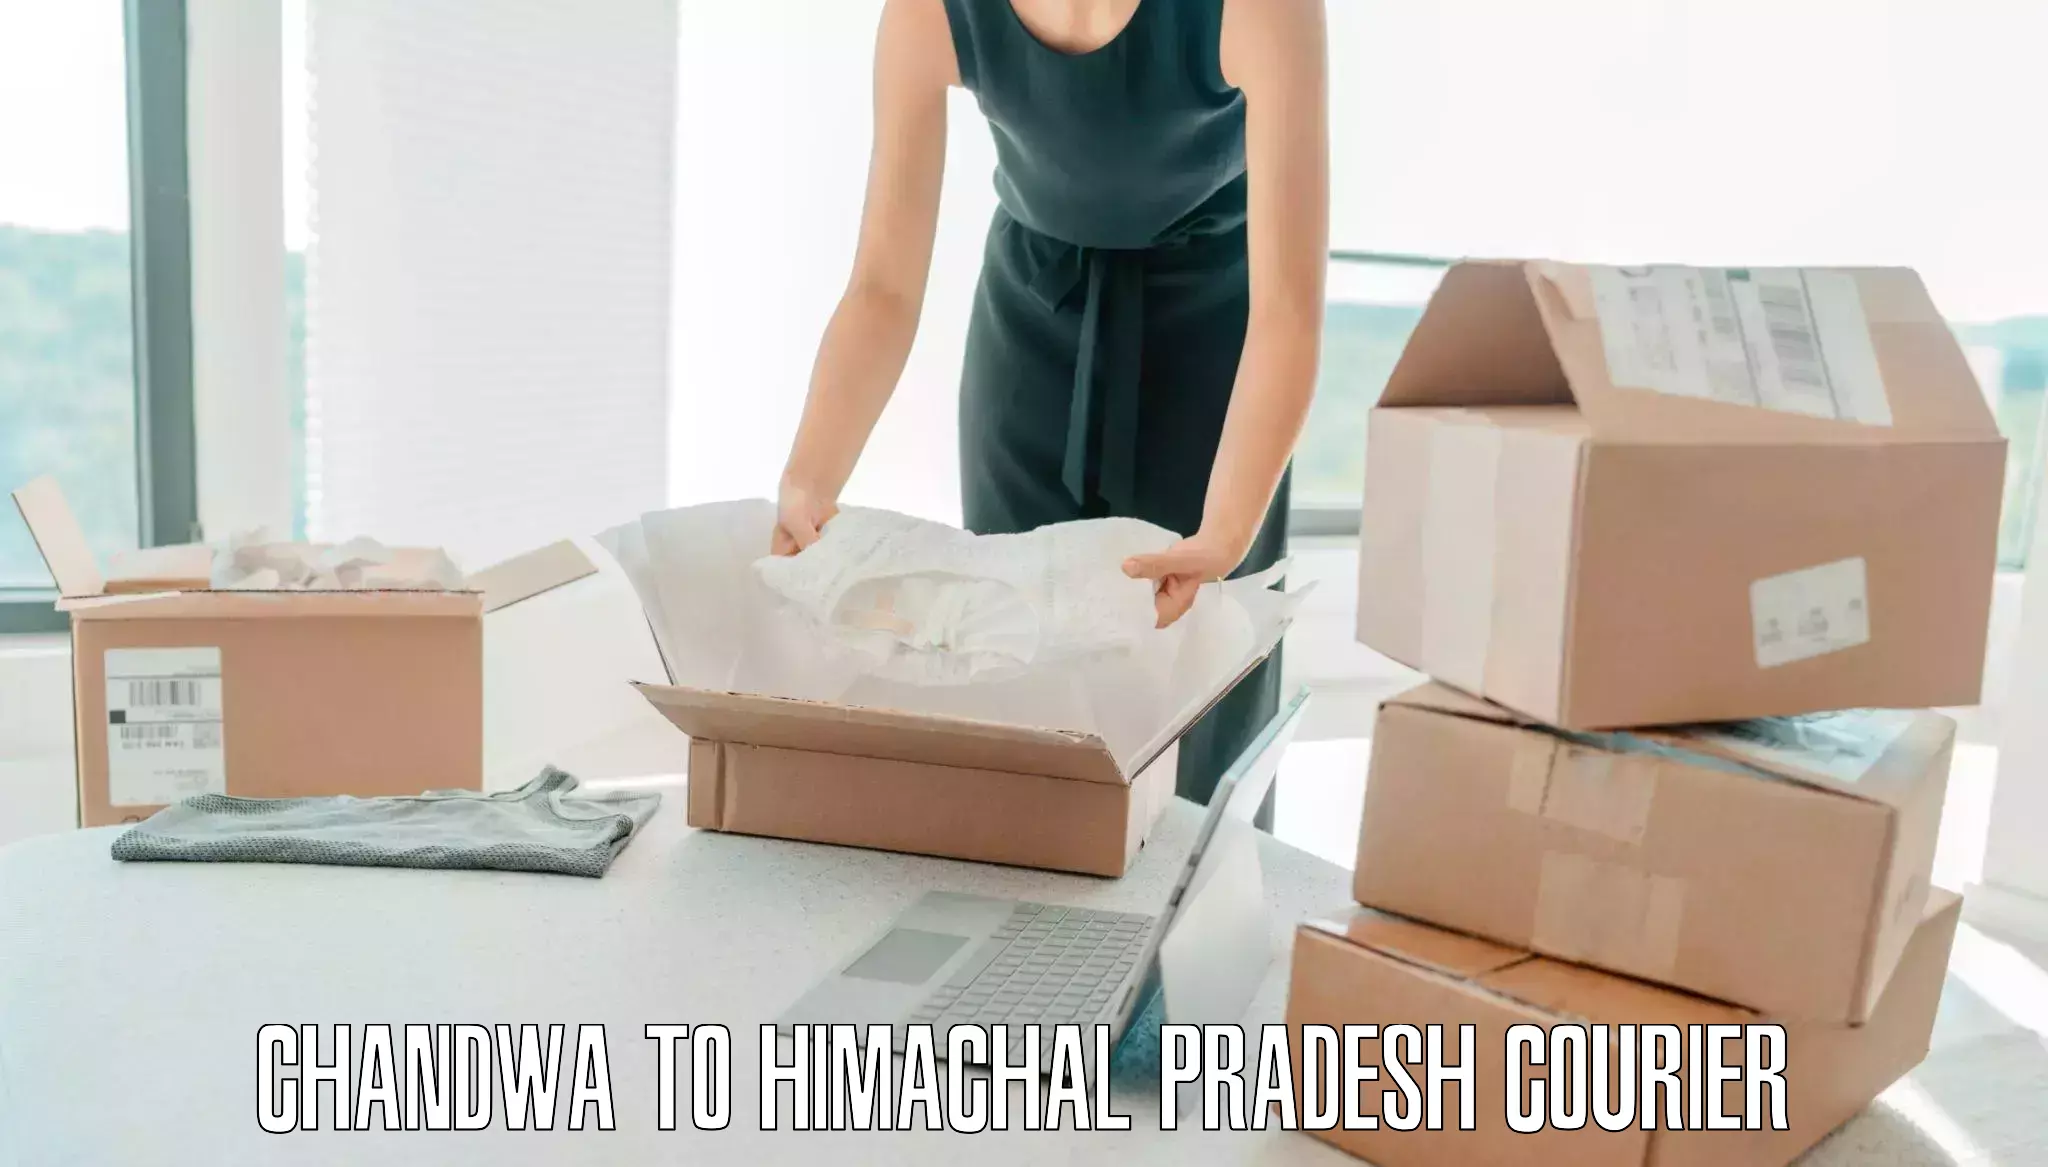 Baggage shipping schedule Chandwa to Chowari